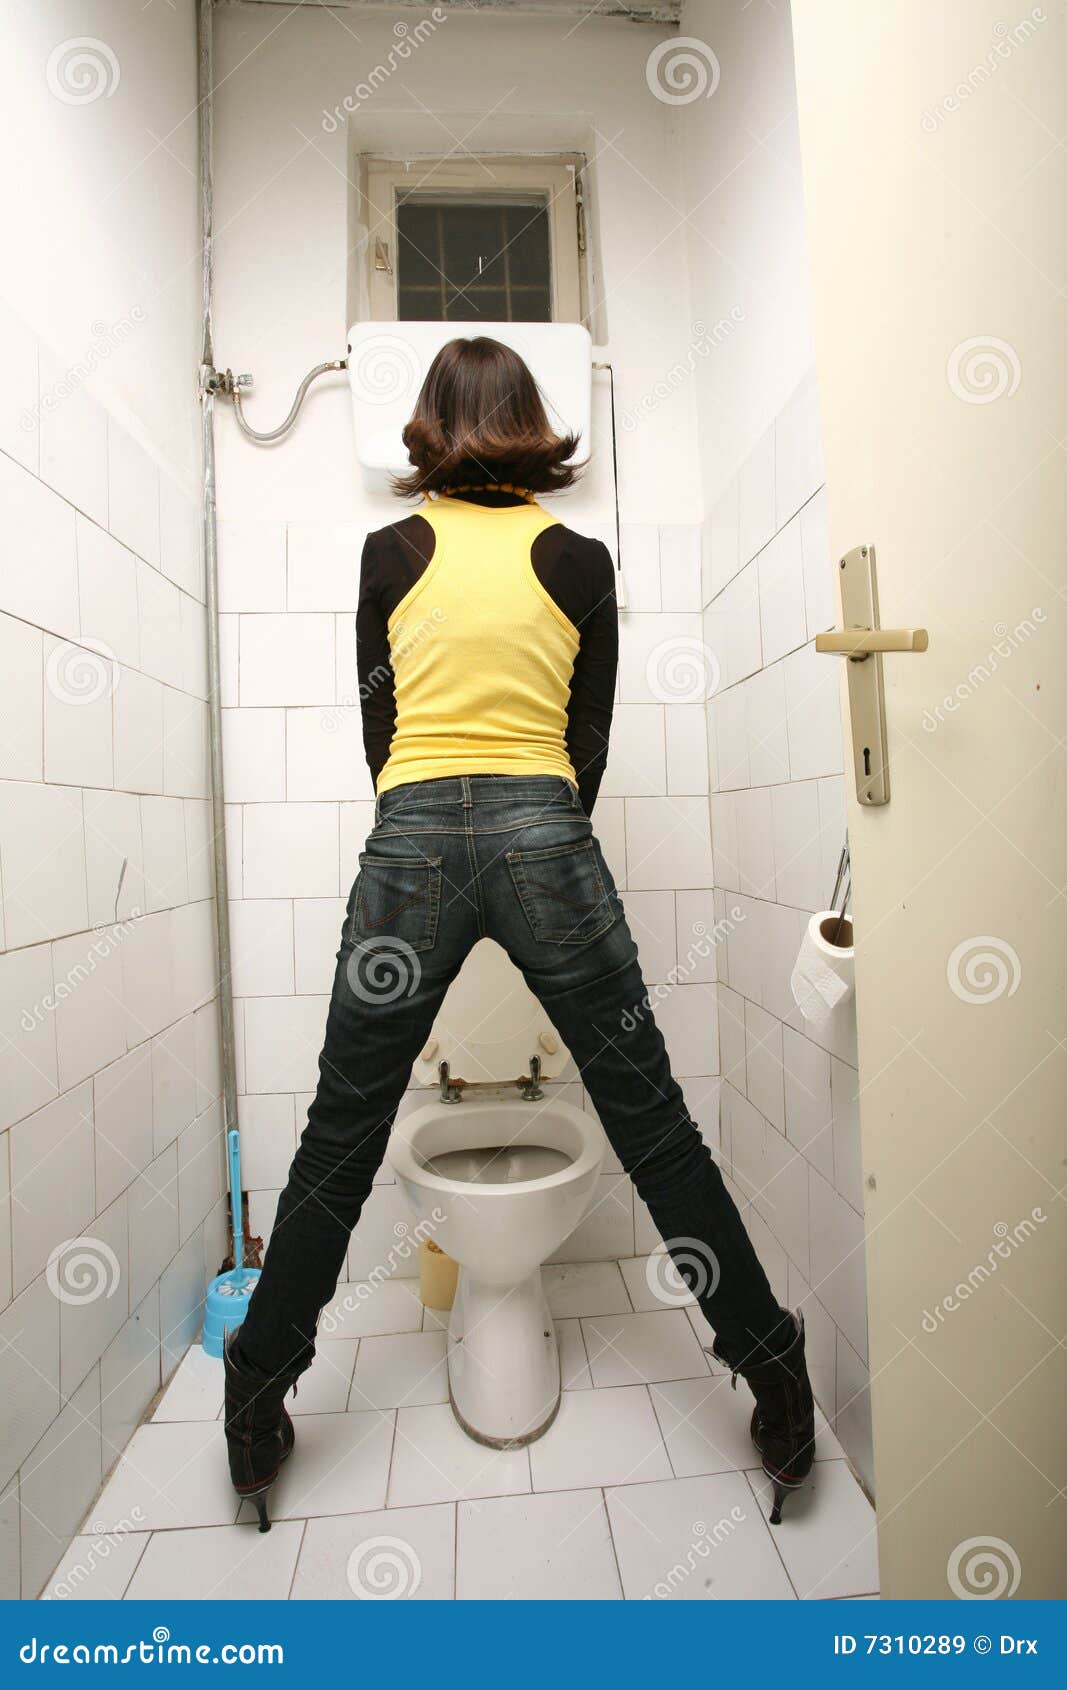 womenn-pee-standing-7310289.jpg